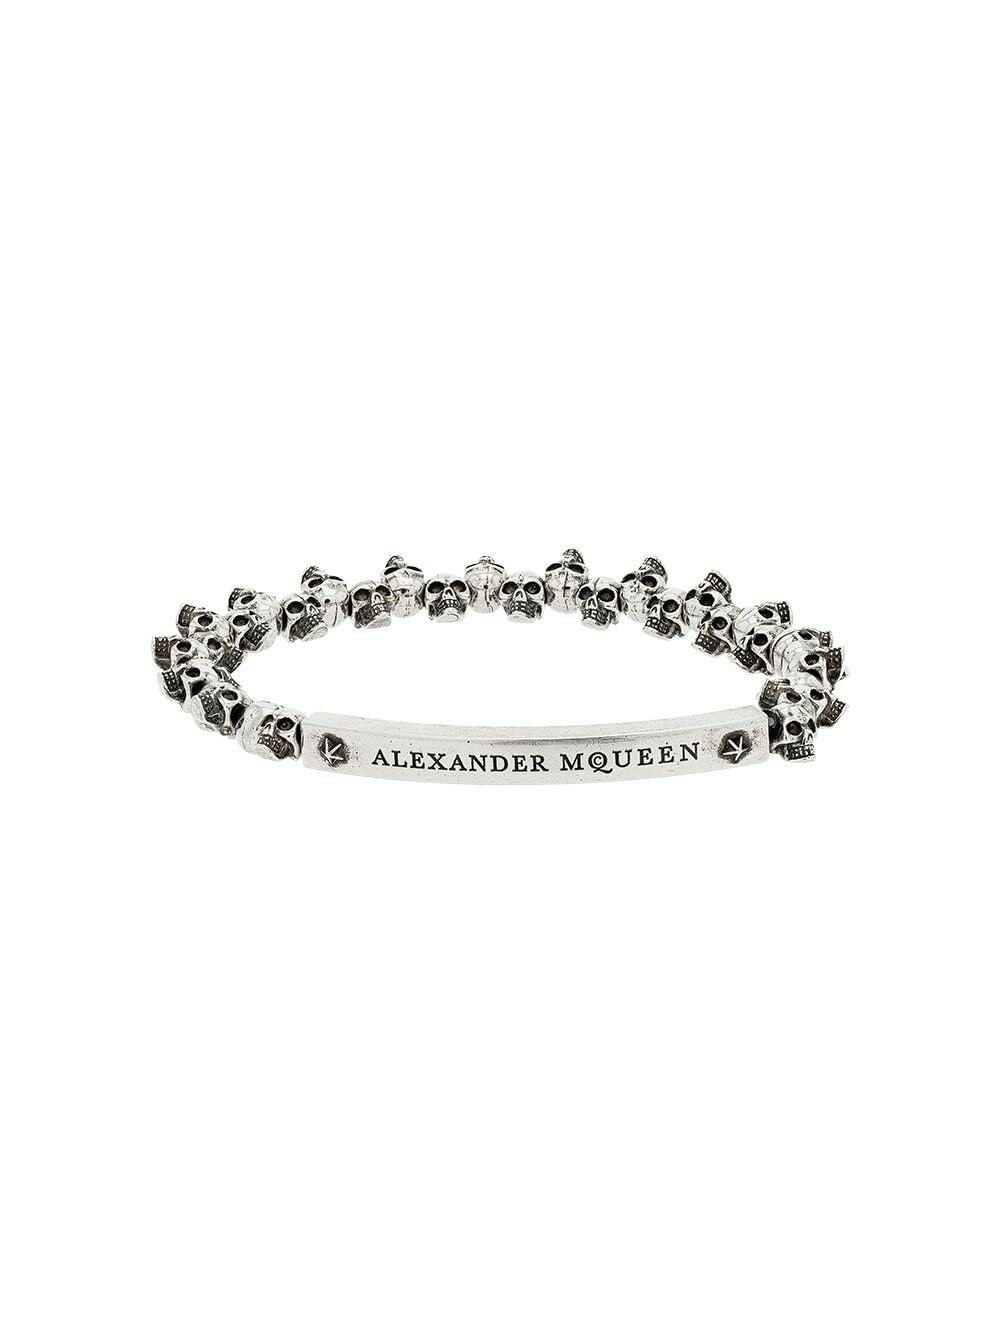 ALEXANDER MCQUEEN - Bracelet With Logo Alexander McQueen